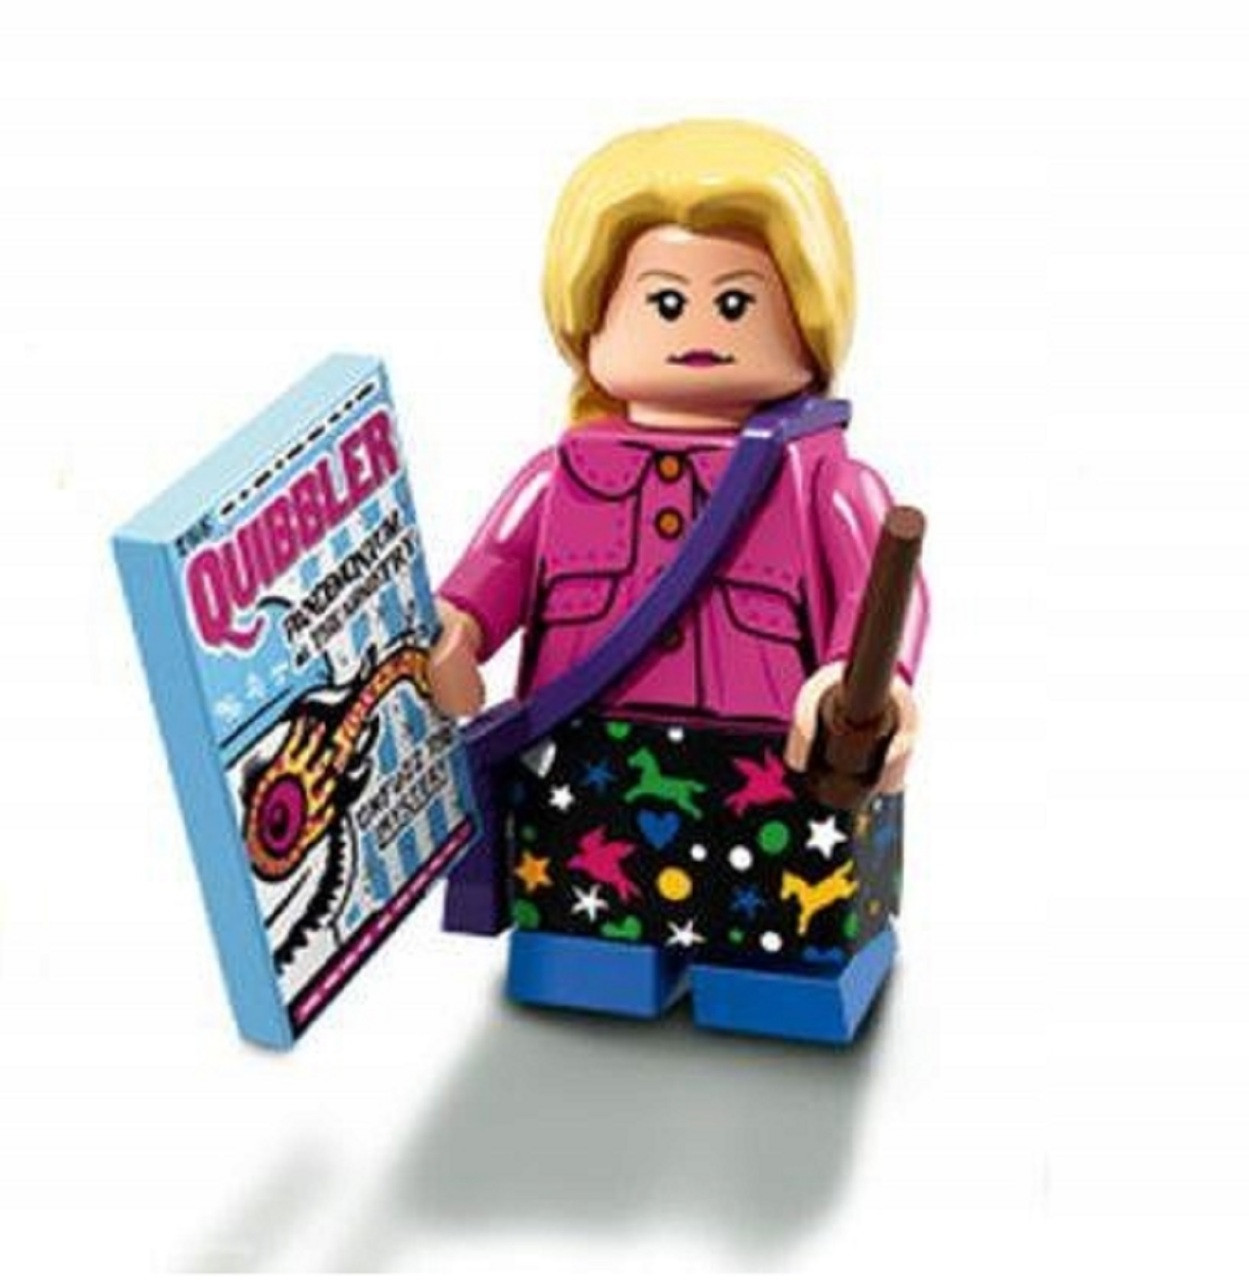 LEGO Harry Series - Luna Lovegood - The Brick People